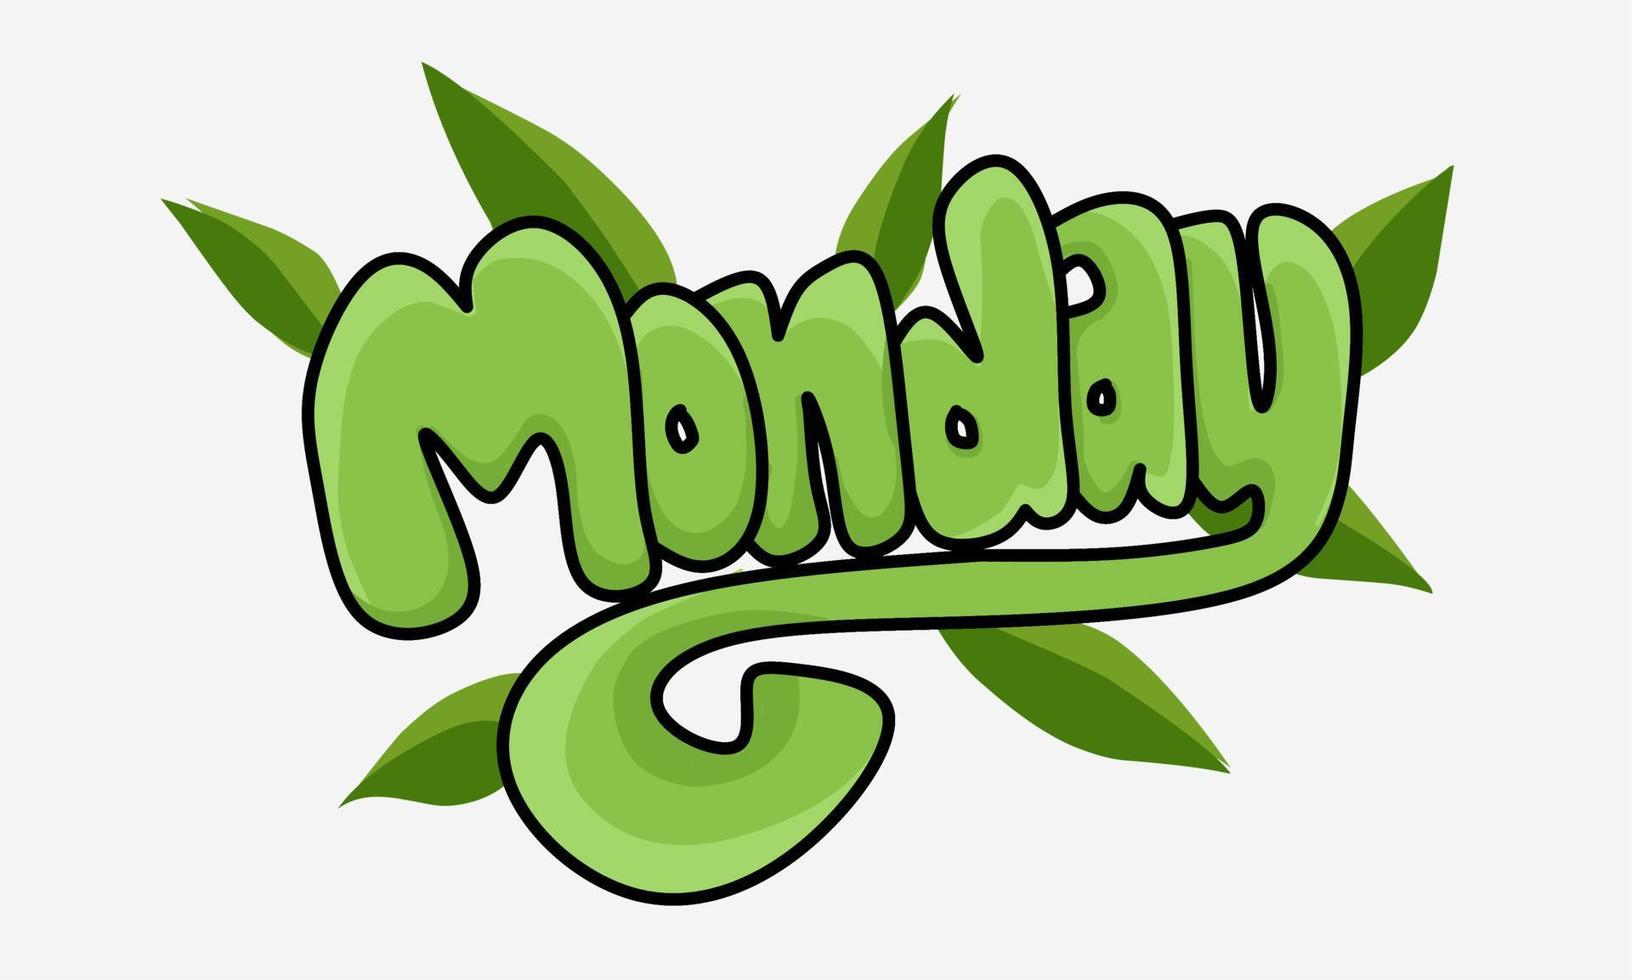 Das Graffiti-Bild mit dem Namen von Montag ist grün und der Hintergrund ist weiß vektor